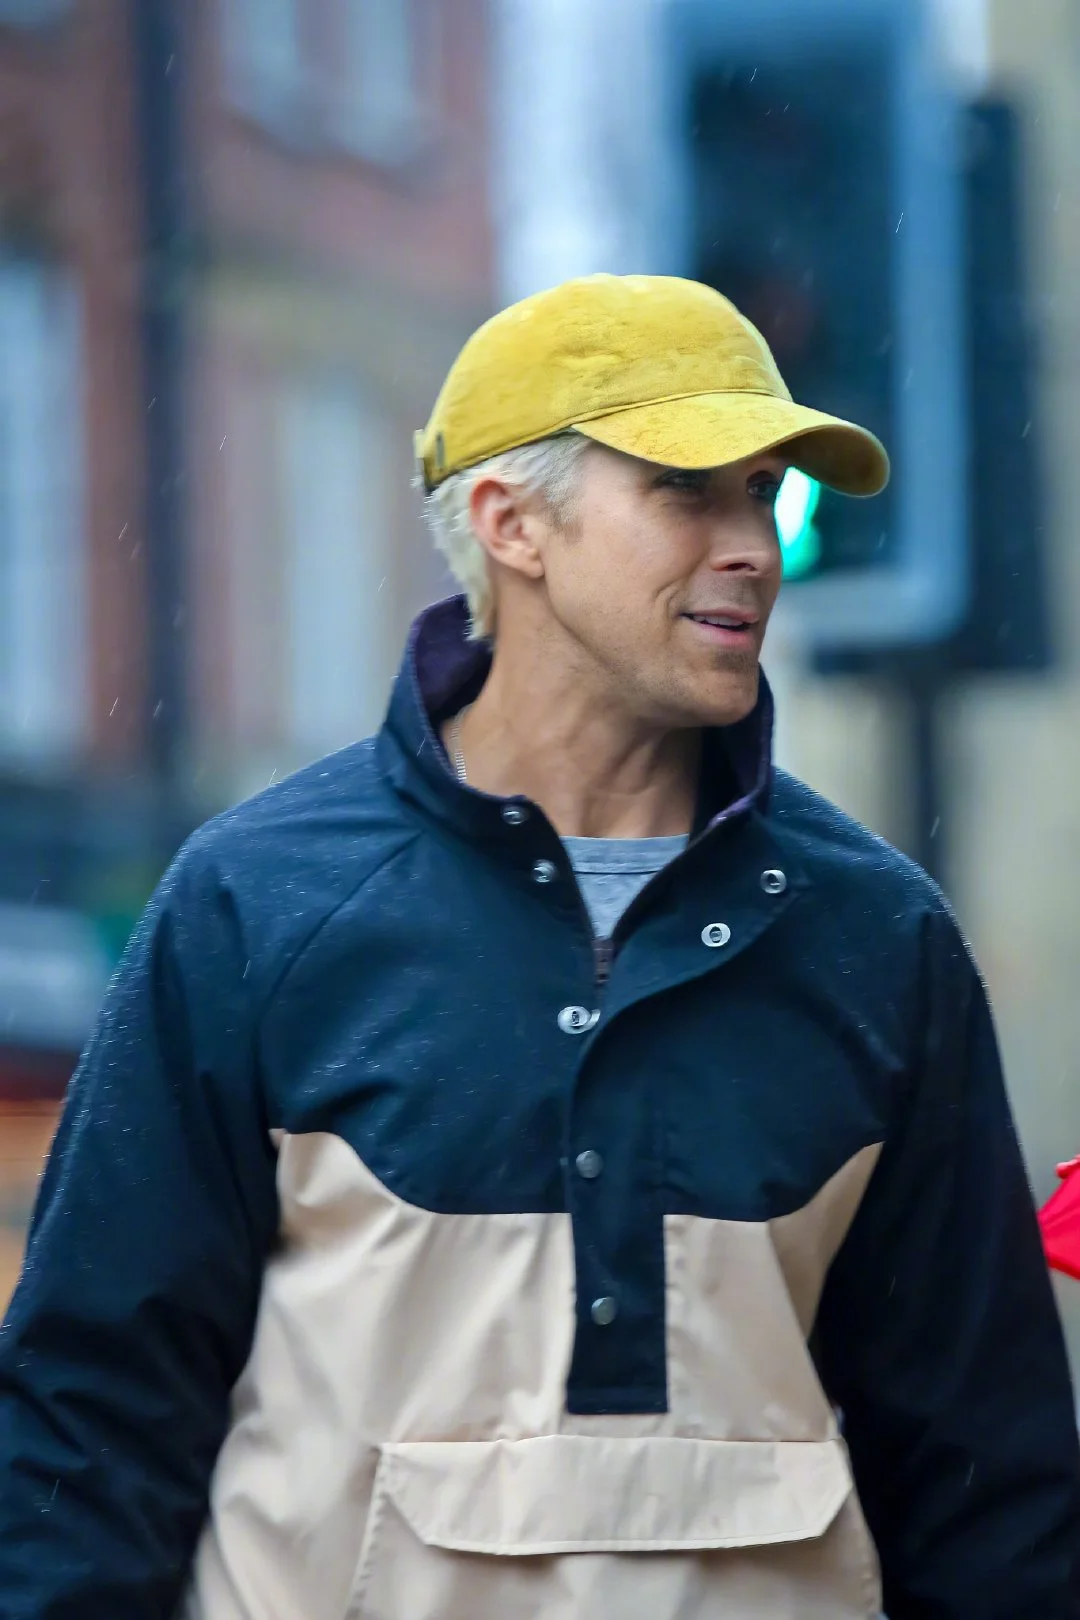 "Barbie": Ryan Gosling's version of Ken's look is suspected to have been exposed